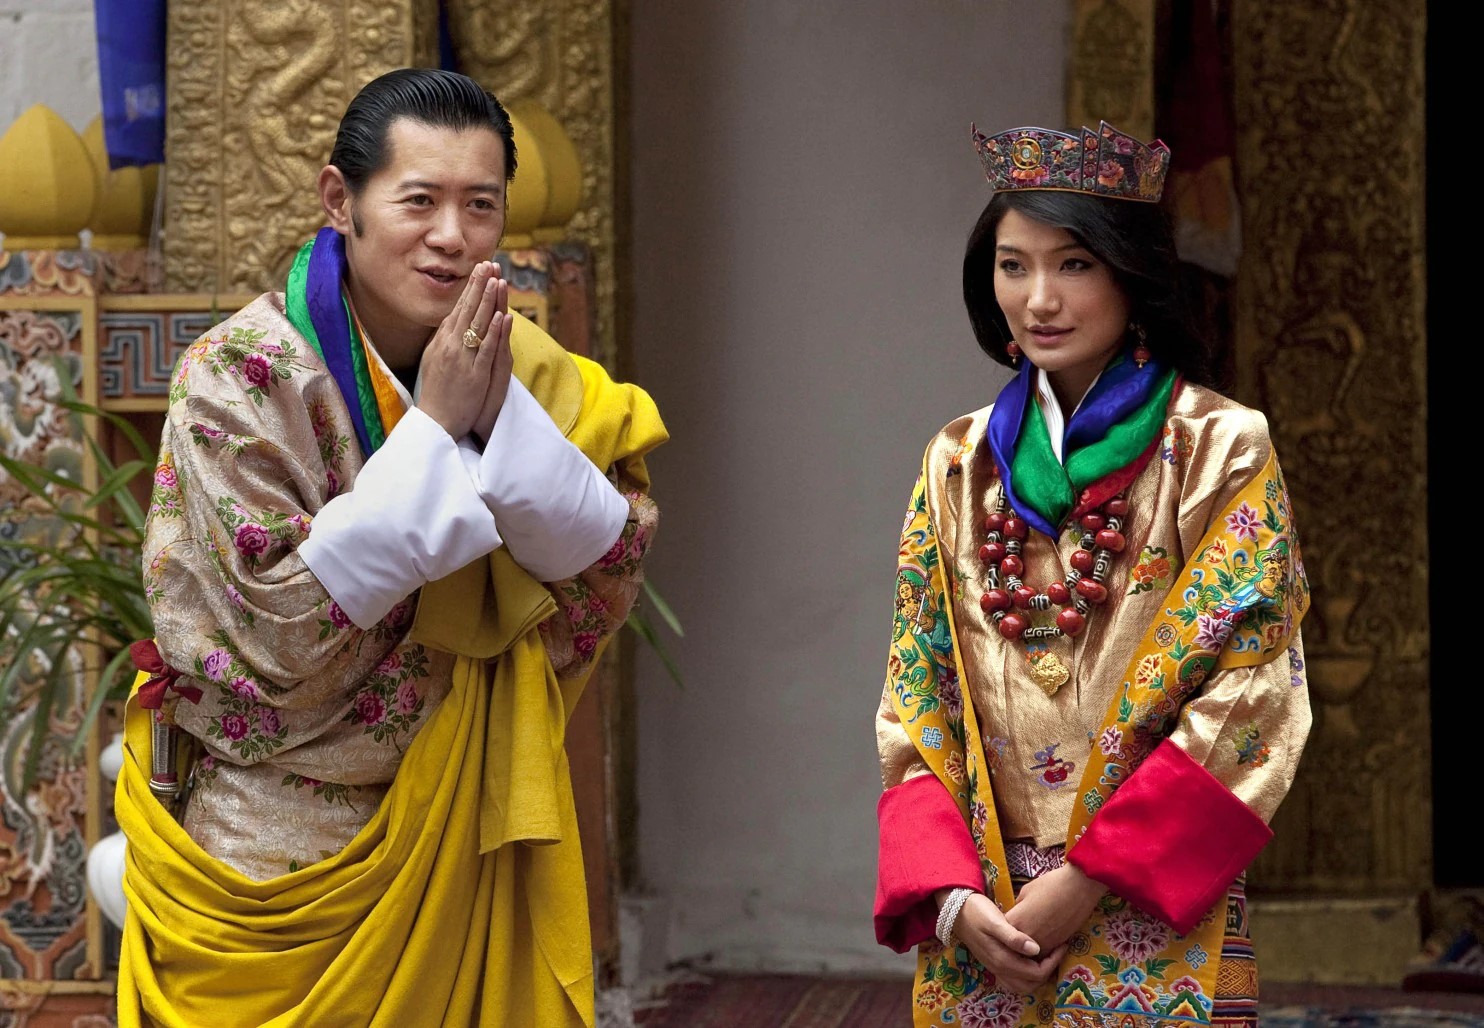 ブータン王国の歴史 文化 伝統について知っておくべきこと 旅行の際に必ずチェックしたい渡航情報などもまとめた